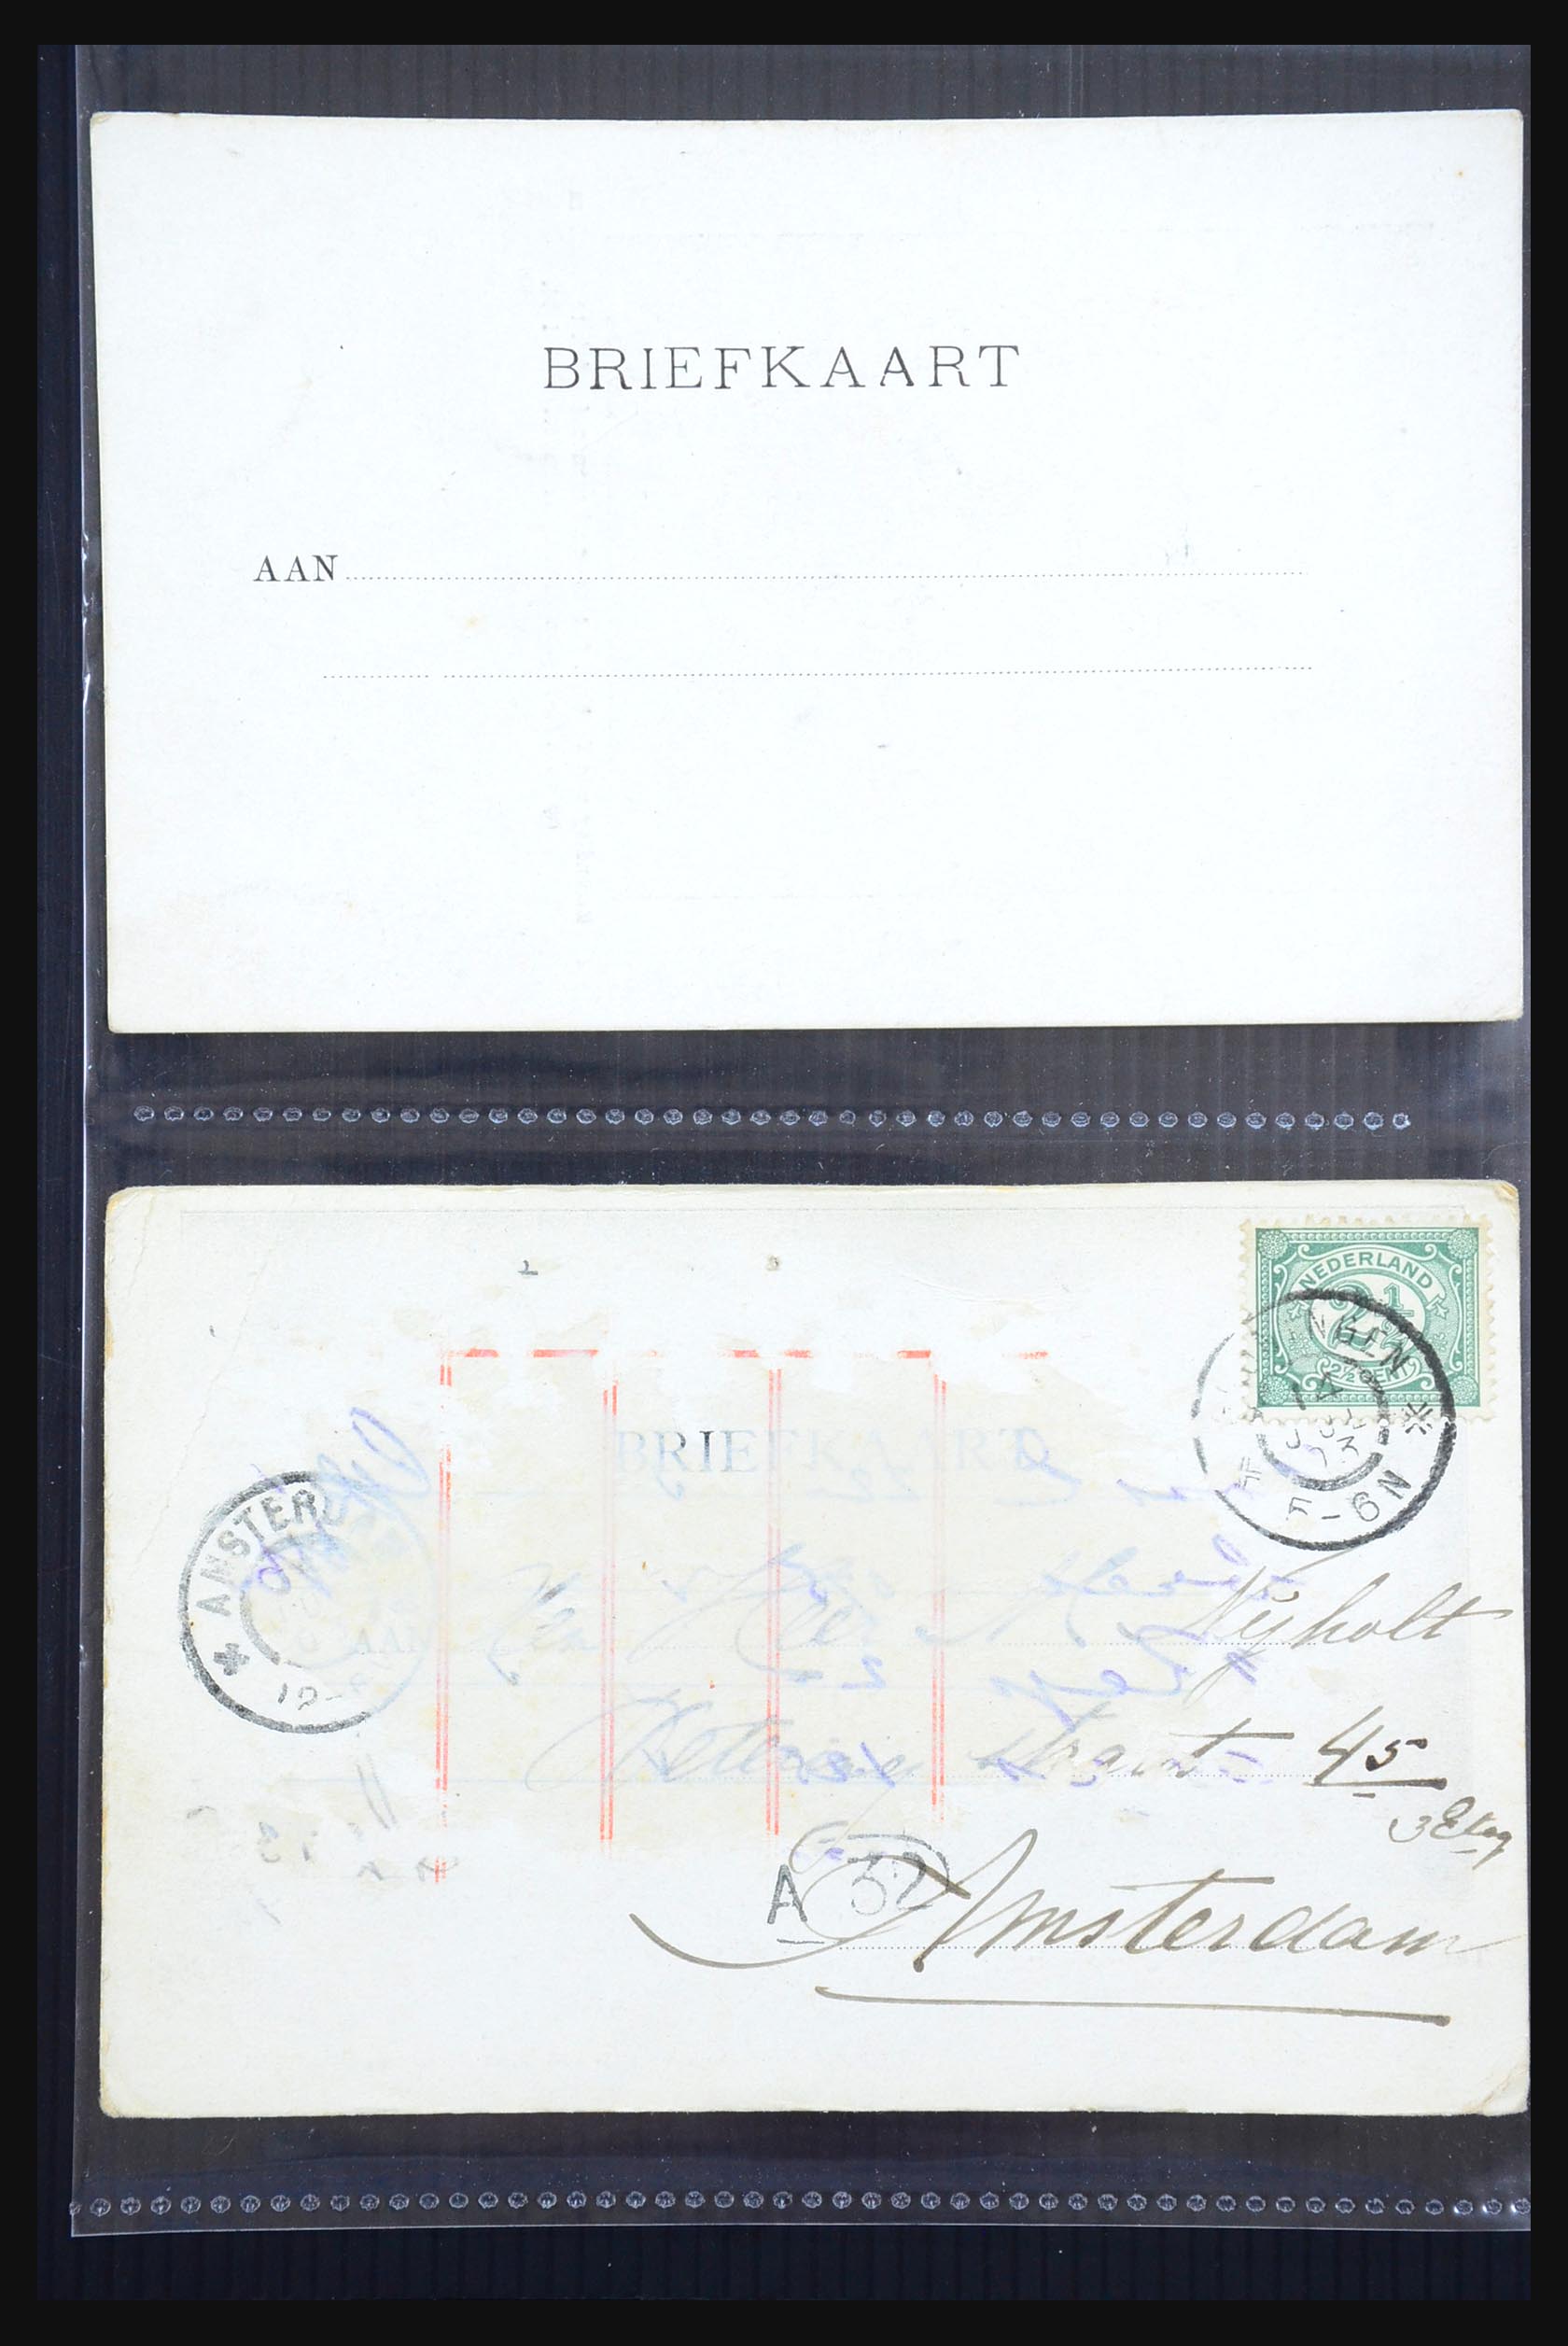 31338 006 - 31338 Nederland ansichtkaarten 1897-1914.